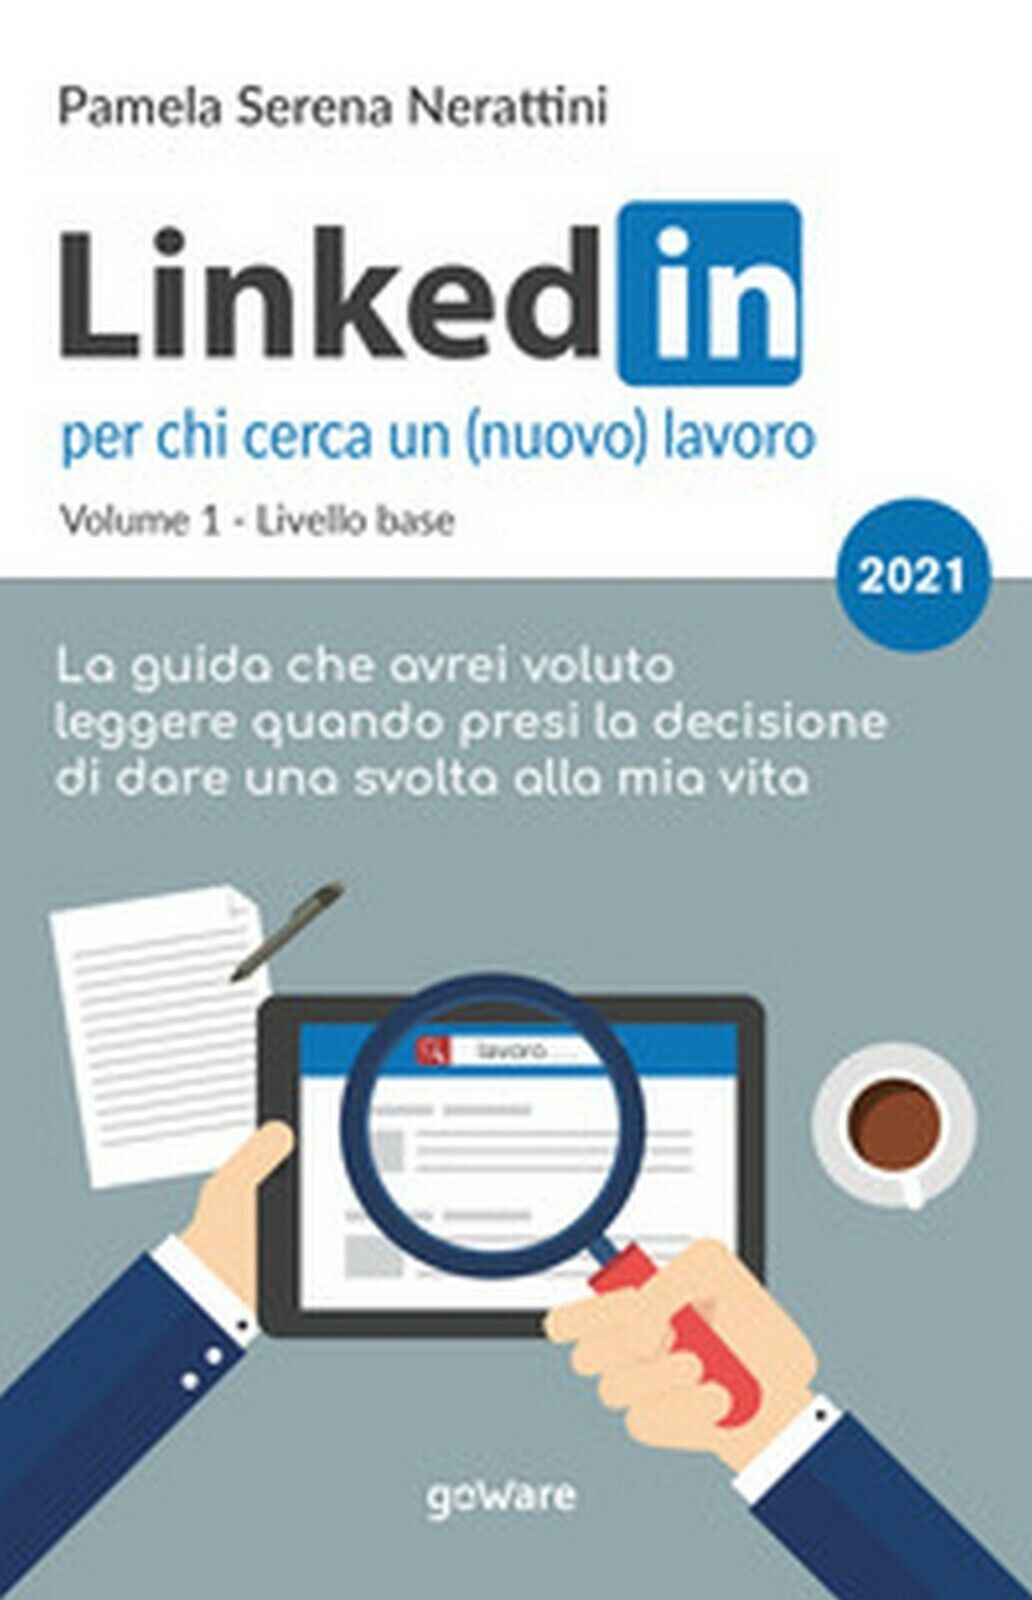 LinkedIn per chi cerca un (nuovo) lavoro, Pamela Serena Nerattini,  2021, GoWare libro usato